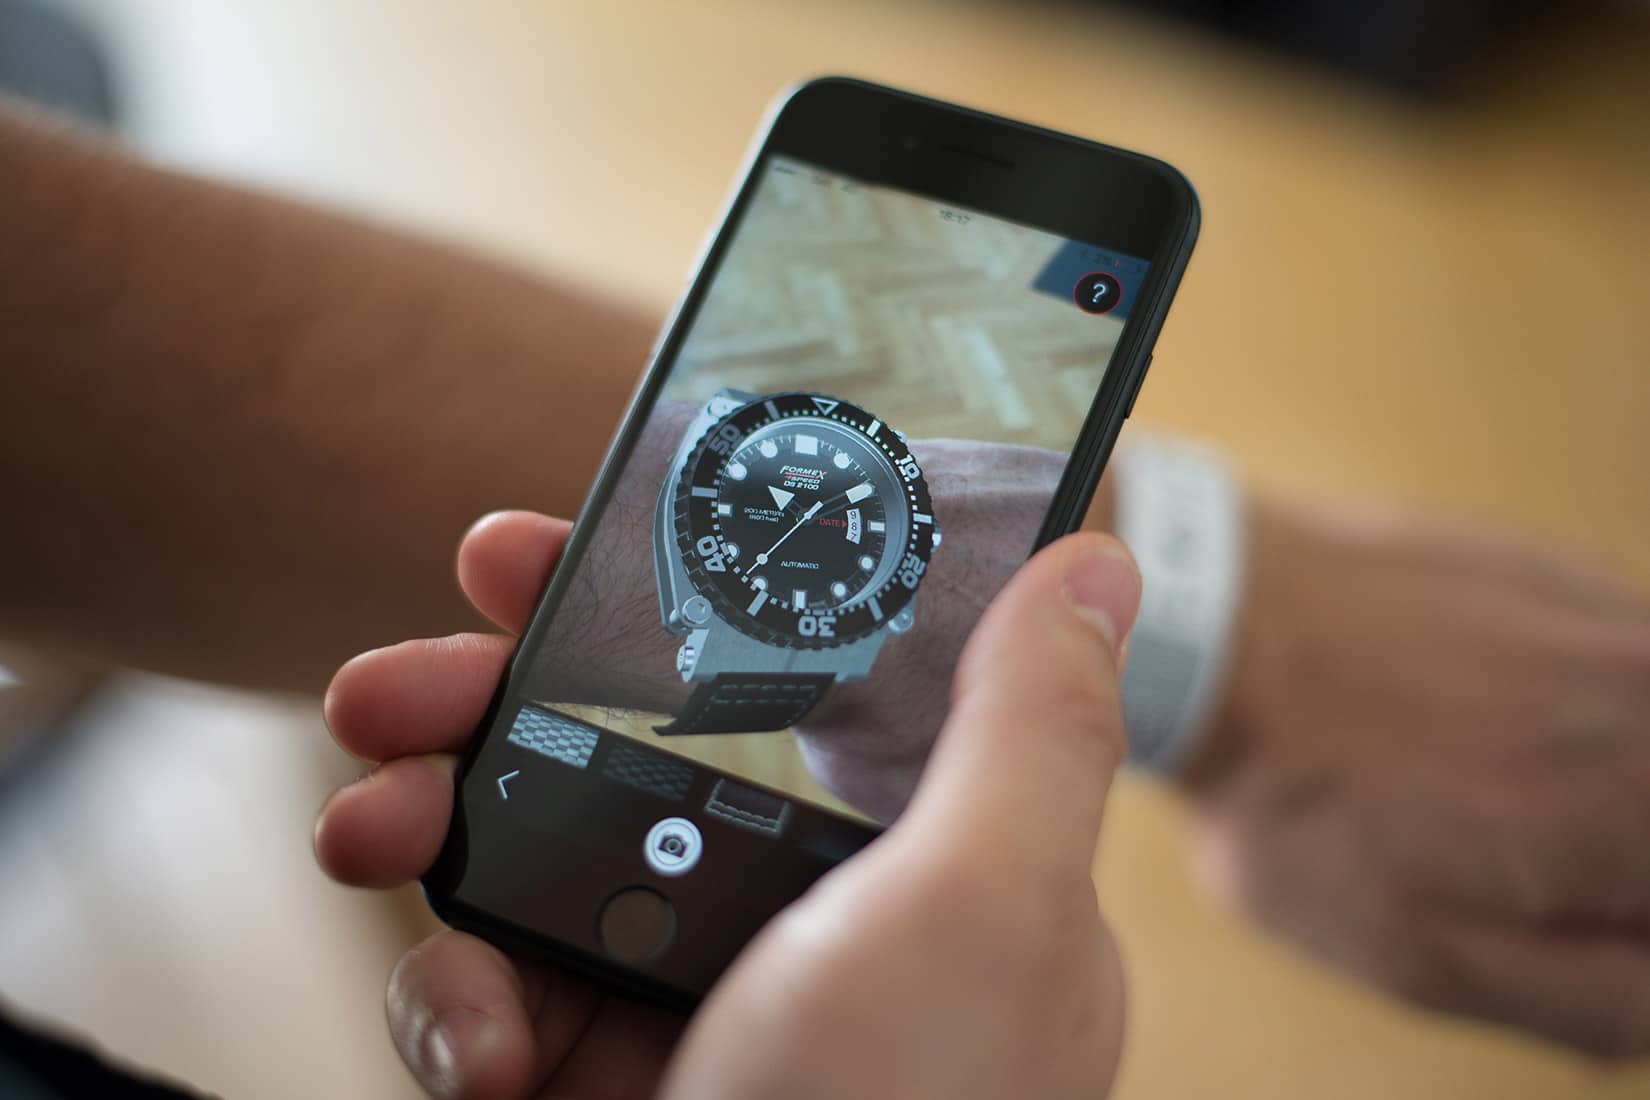 Značka Formex Swiss Watches sprístupnila virtuálne skúšanie svojich hodiniek